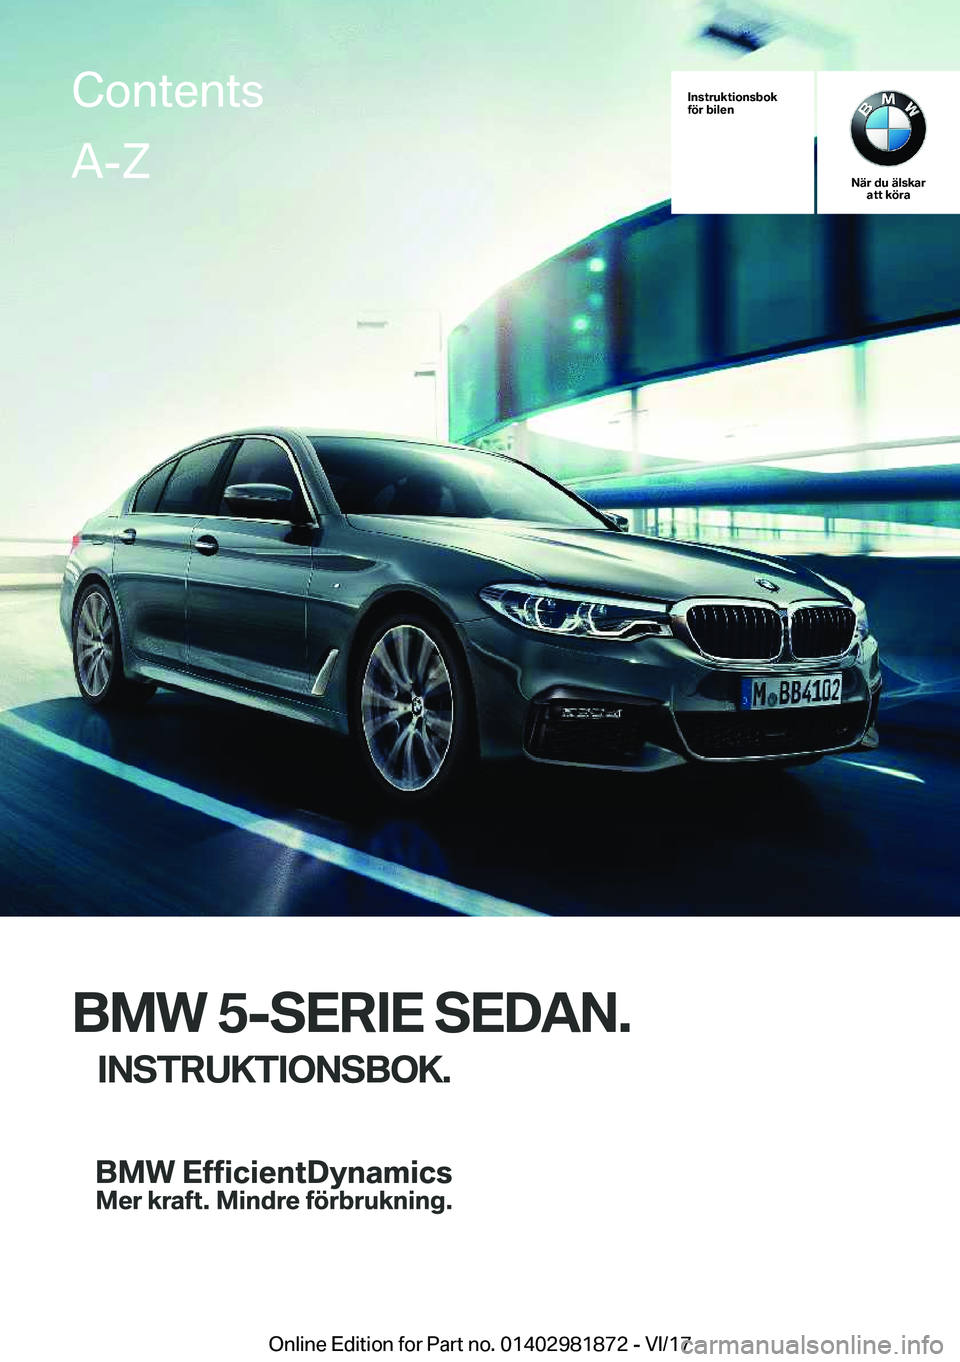 BMW 5 SERIES 2018  InstruktionsbÖcker (in Swedish) �I�n�s�t�r�u�k�t�i�o�n�s�b�o�k
�f�